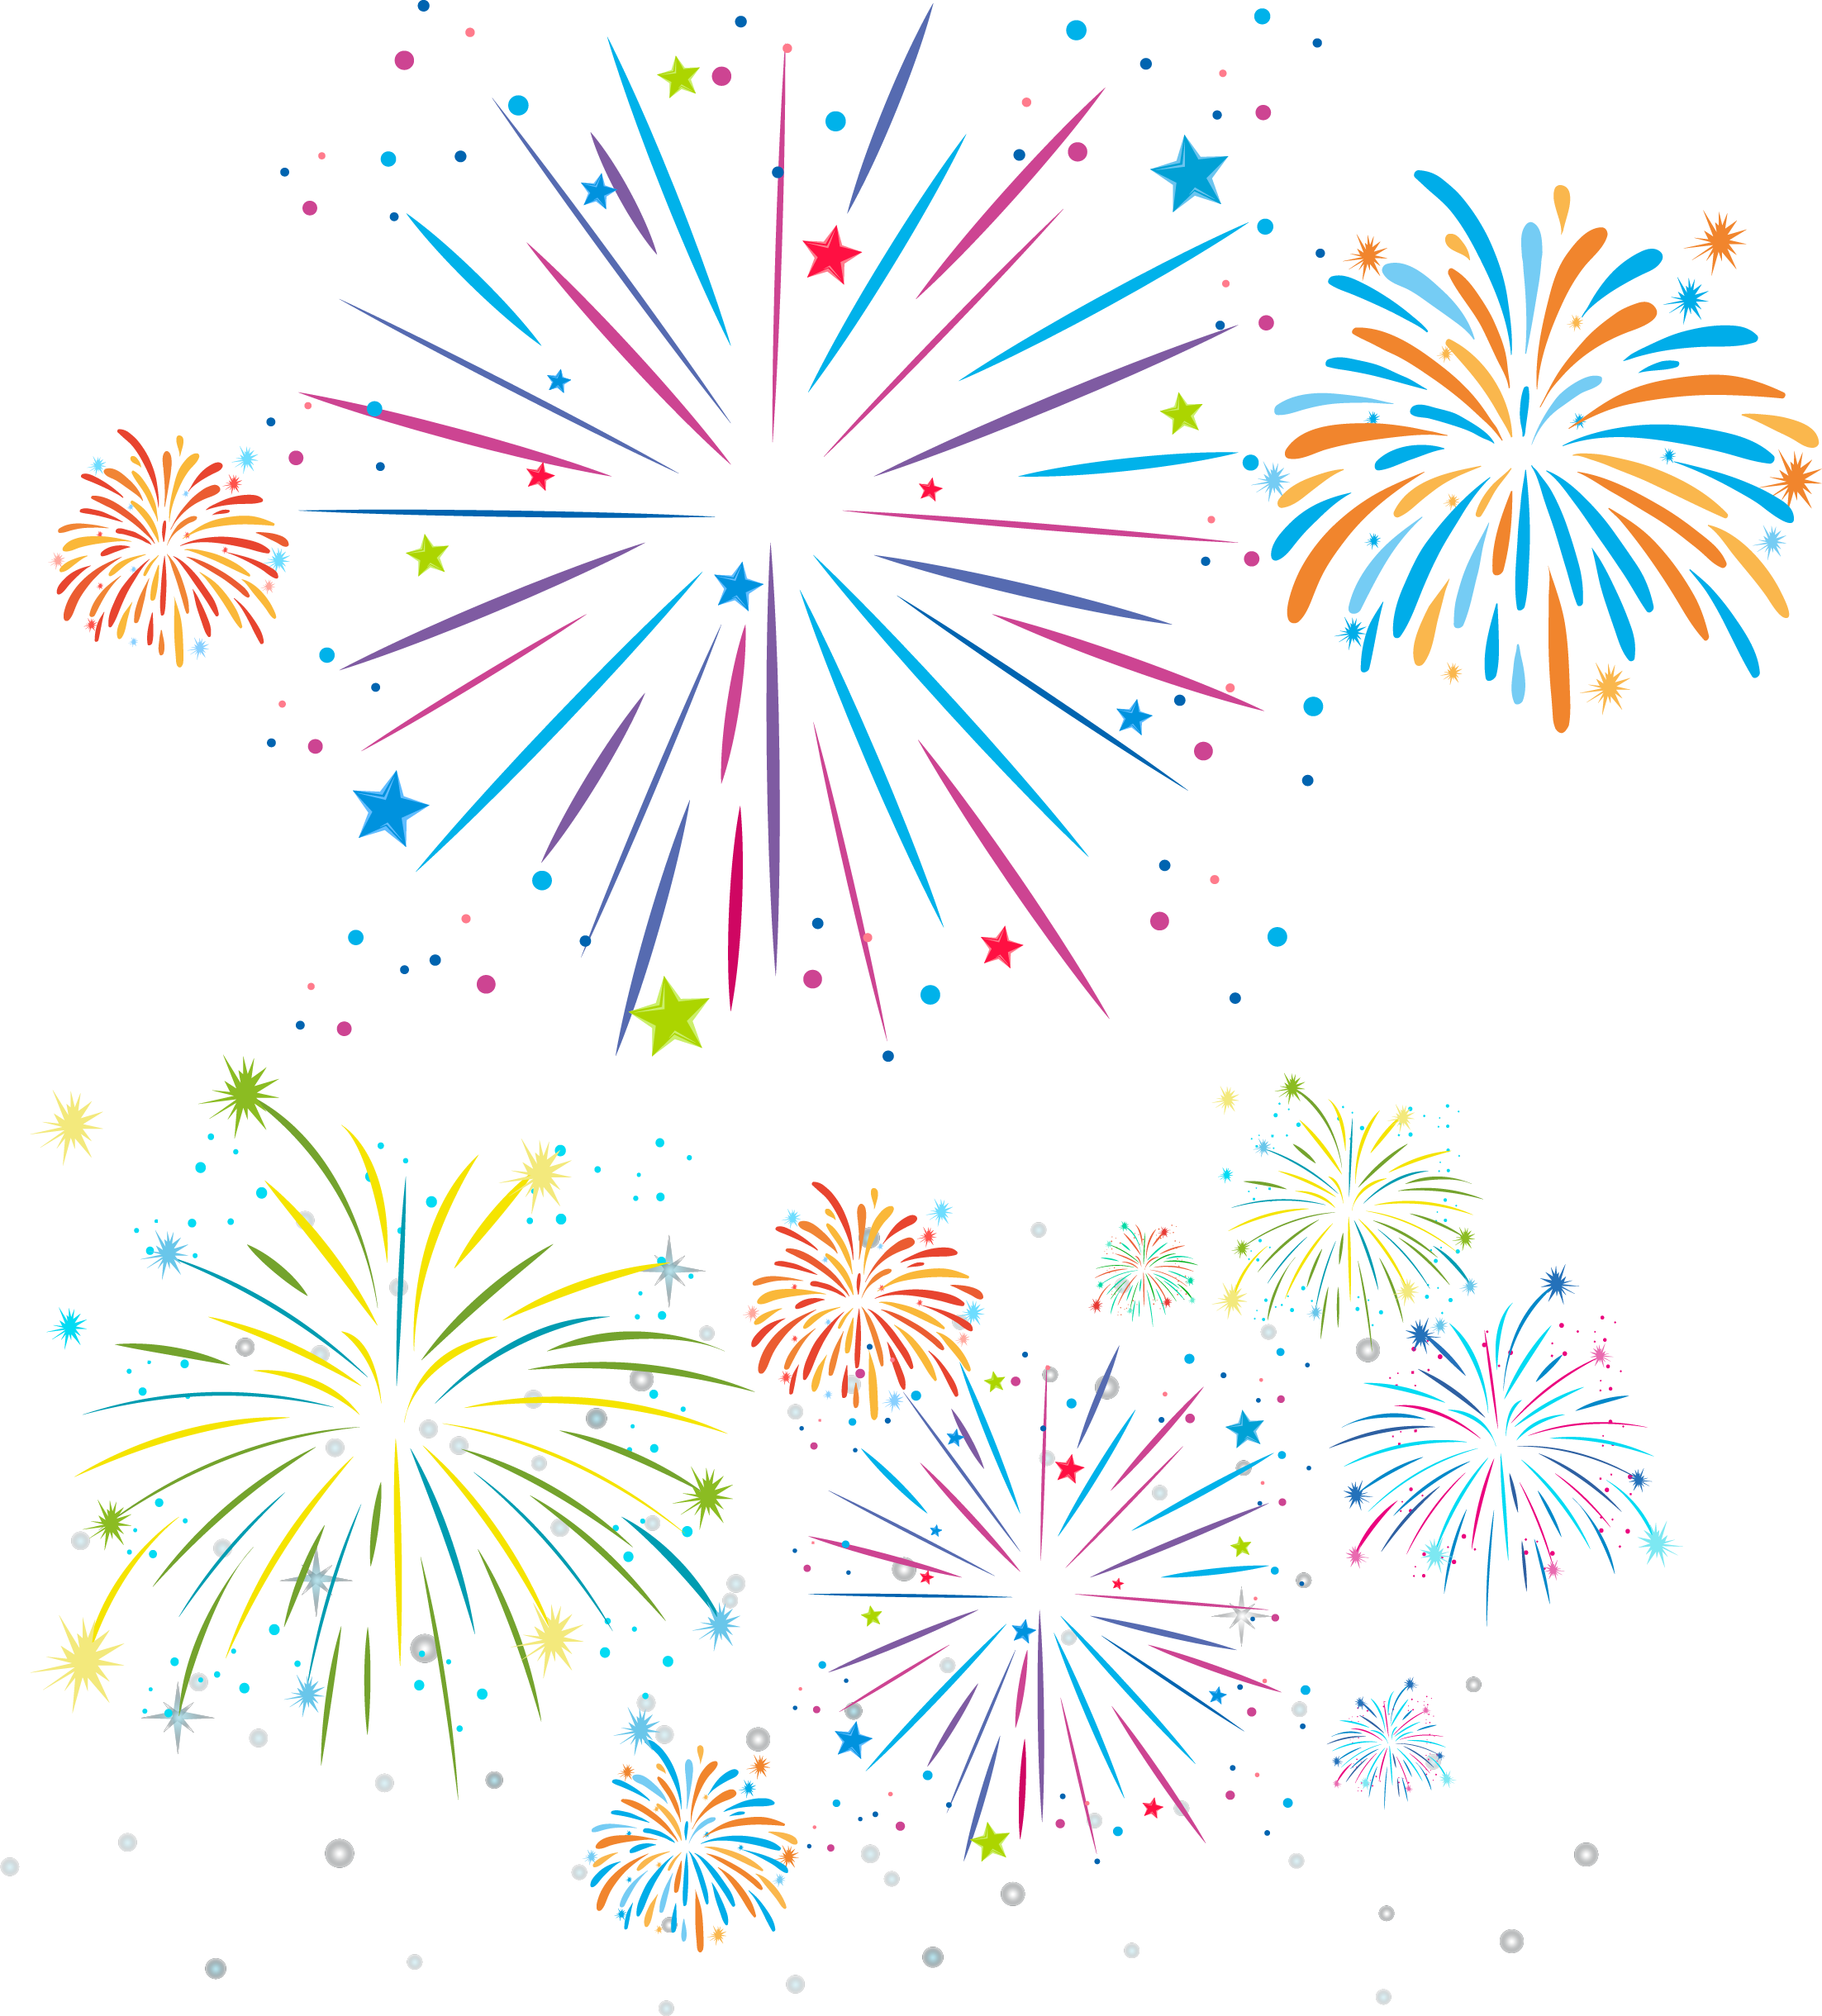 Festival Fireworks Illustration Royalty-Free Festivals Drawing PNG Image